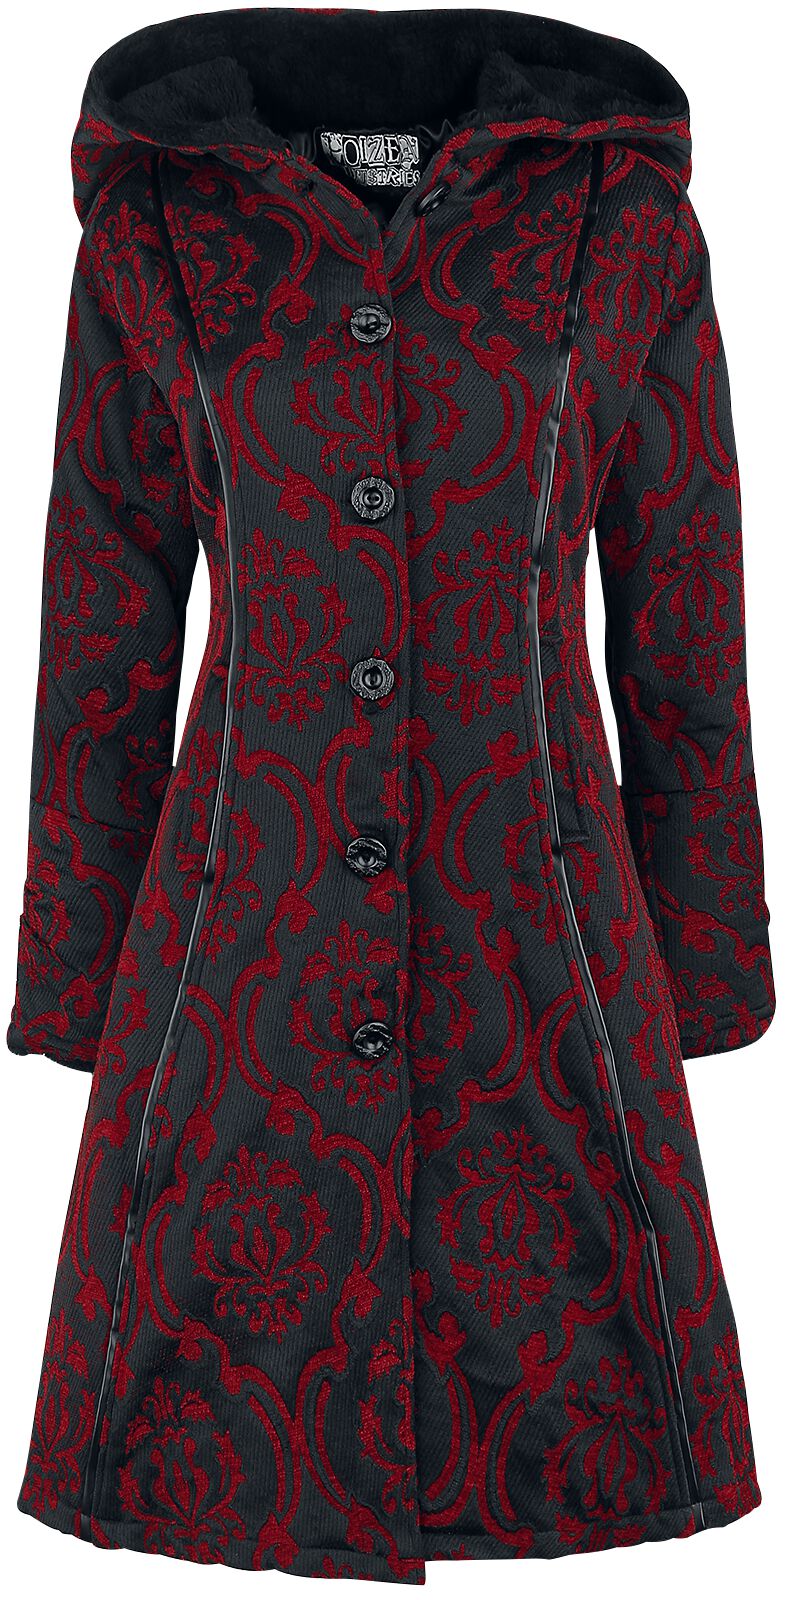 Poizen Industries Mansion Coat Mantel rot schwarz in XXL